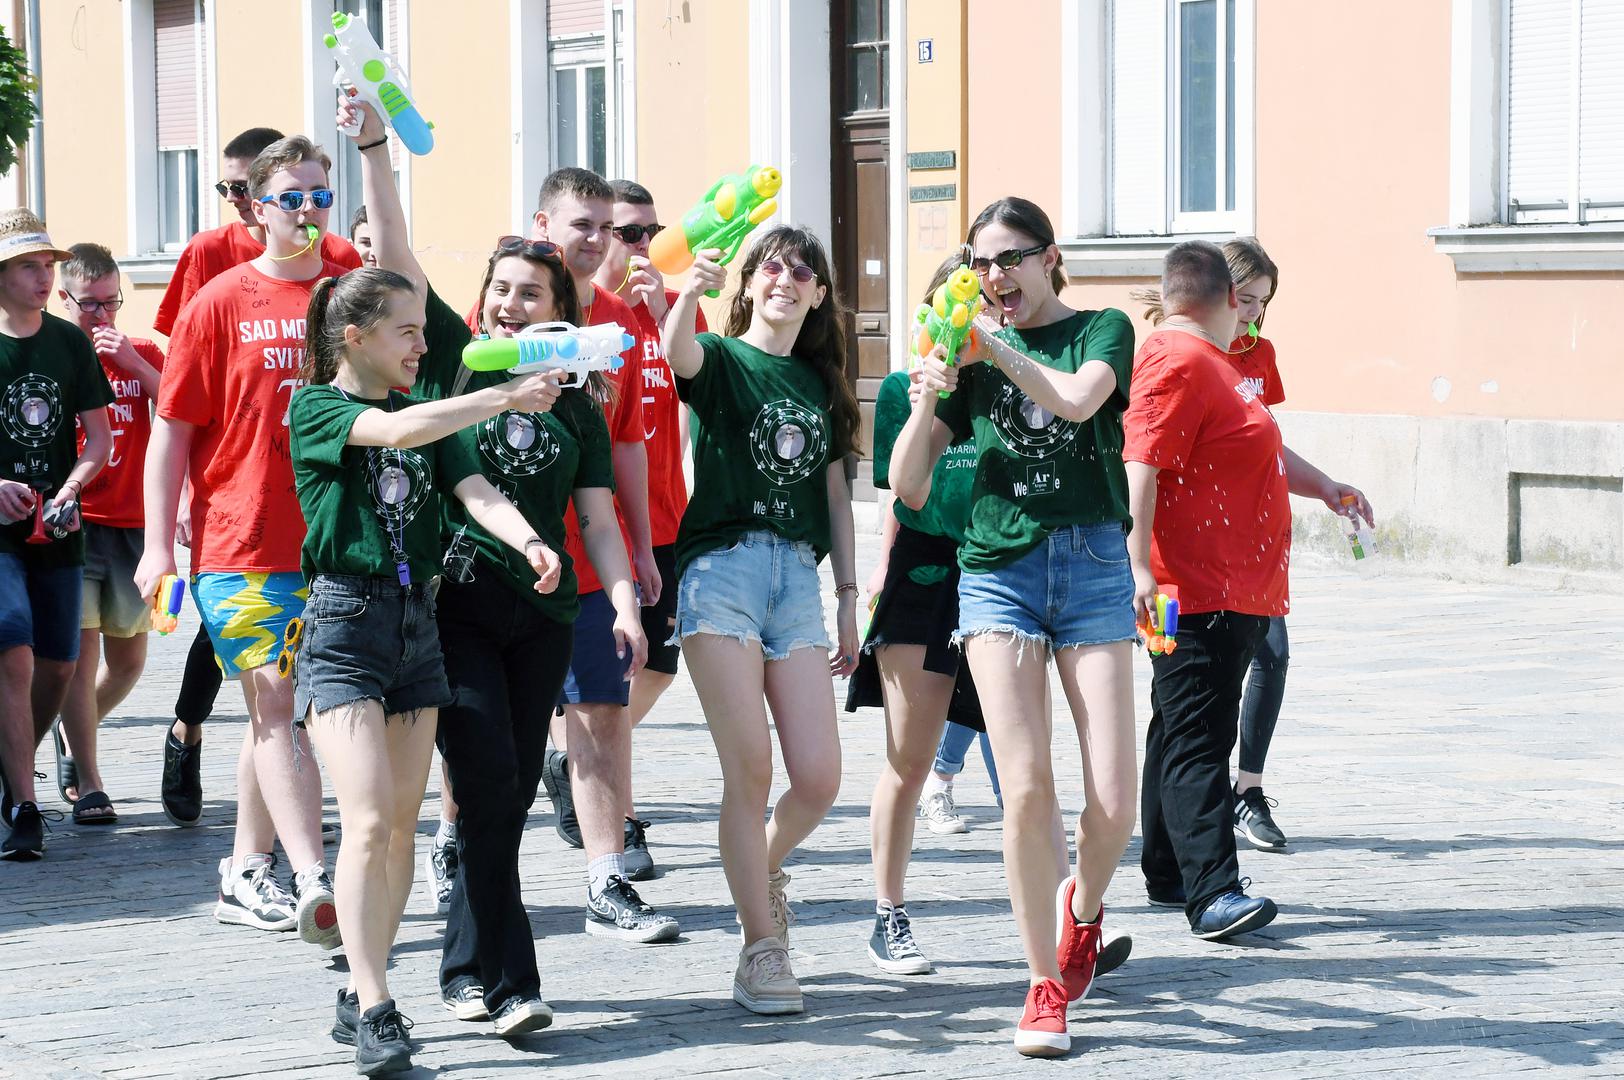 25.05.2022., Sisak - Setnjom gradskim ulicama sisacki gimnazijalci oprostili su se od srednjoskolskog obrazovanja. Photo: Nikola Cutuk/PIXSELL